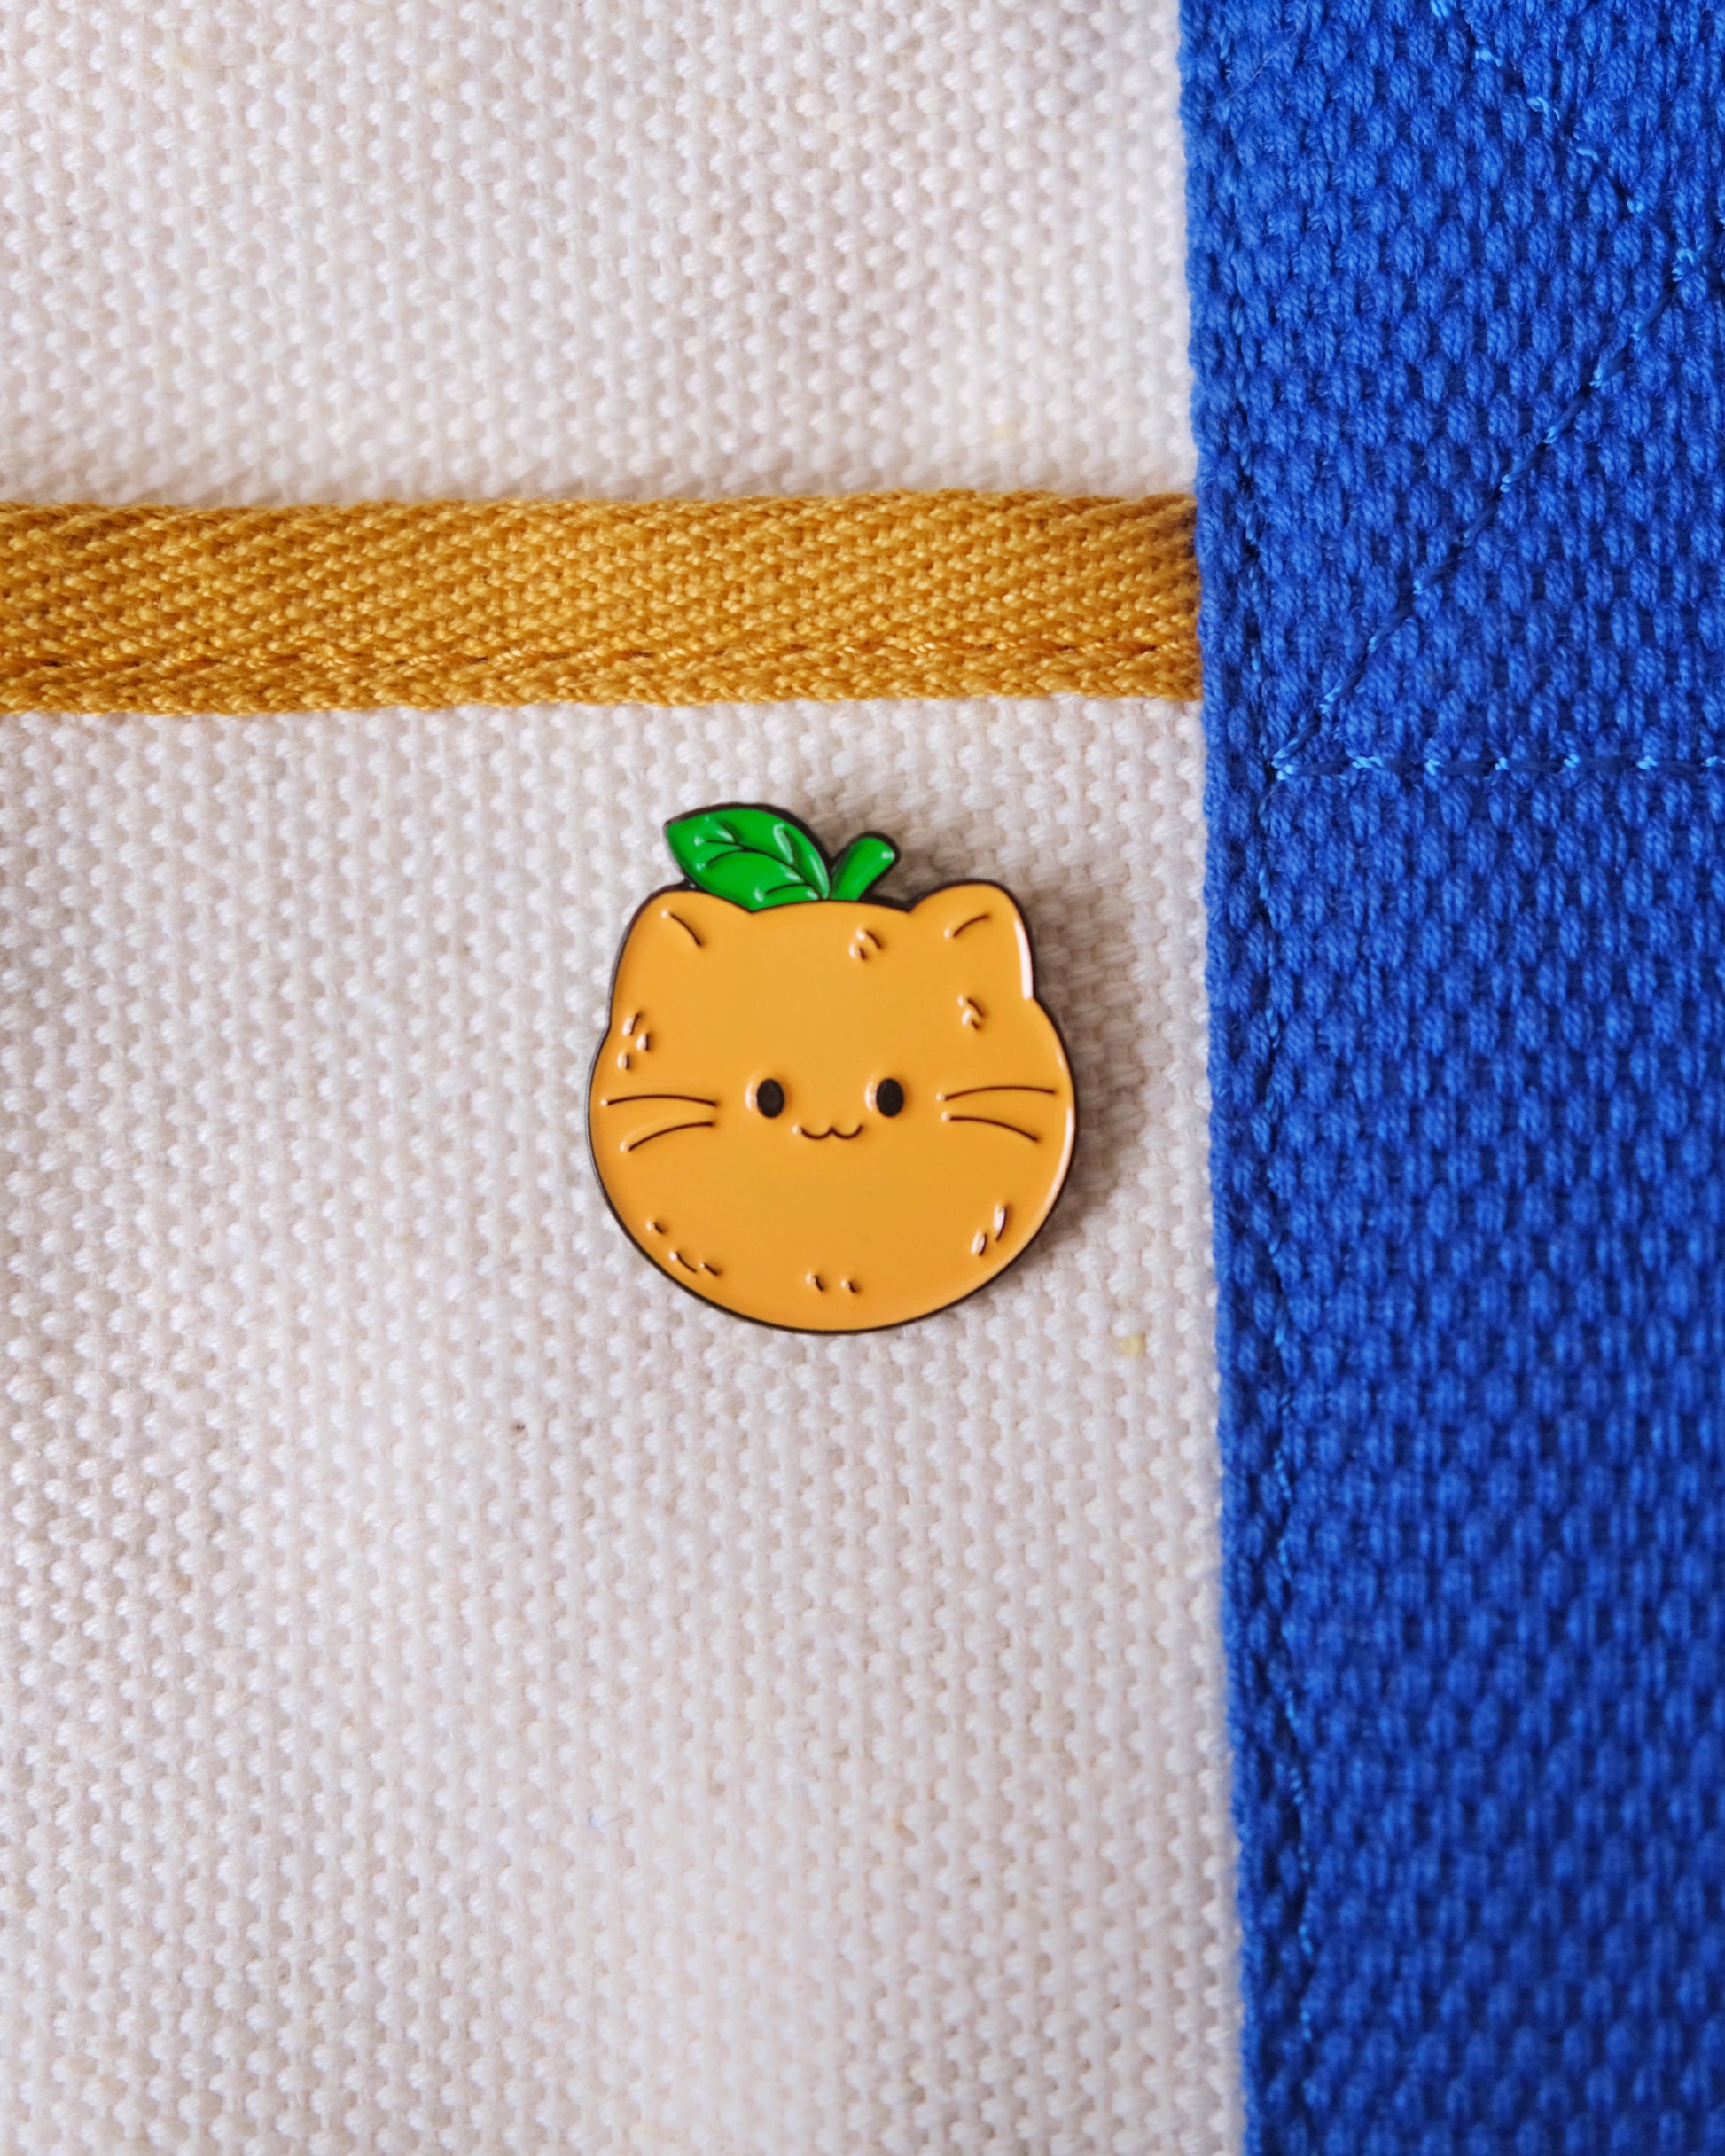 Orange Cat Enamel Pin.